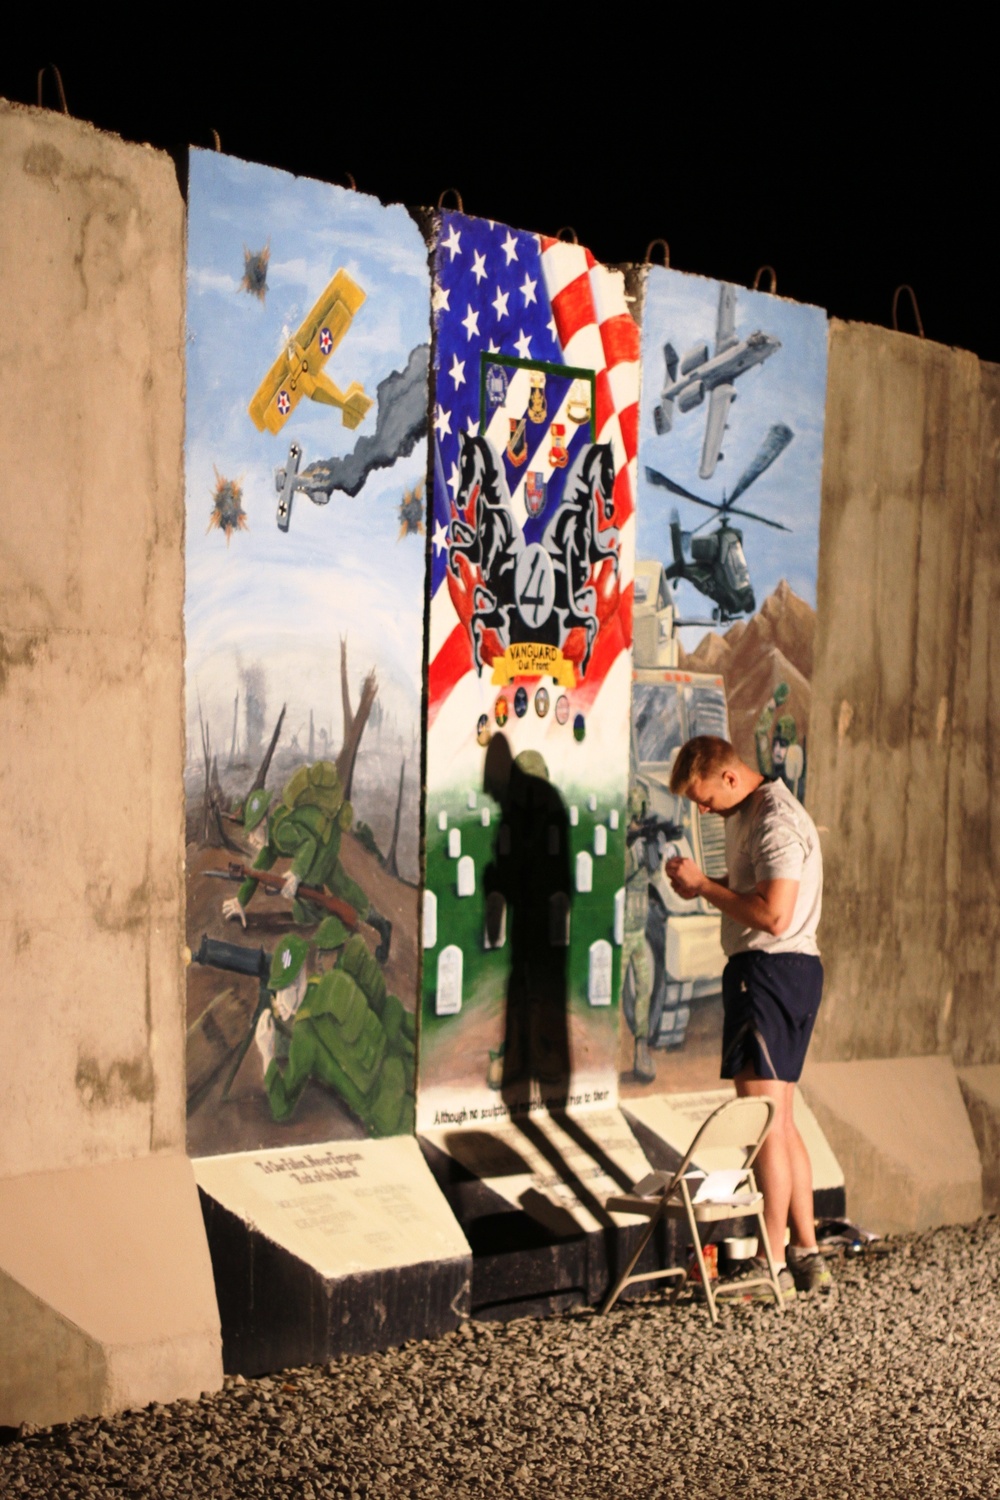 Airman honors Vanguard Brigade with mural